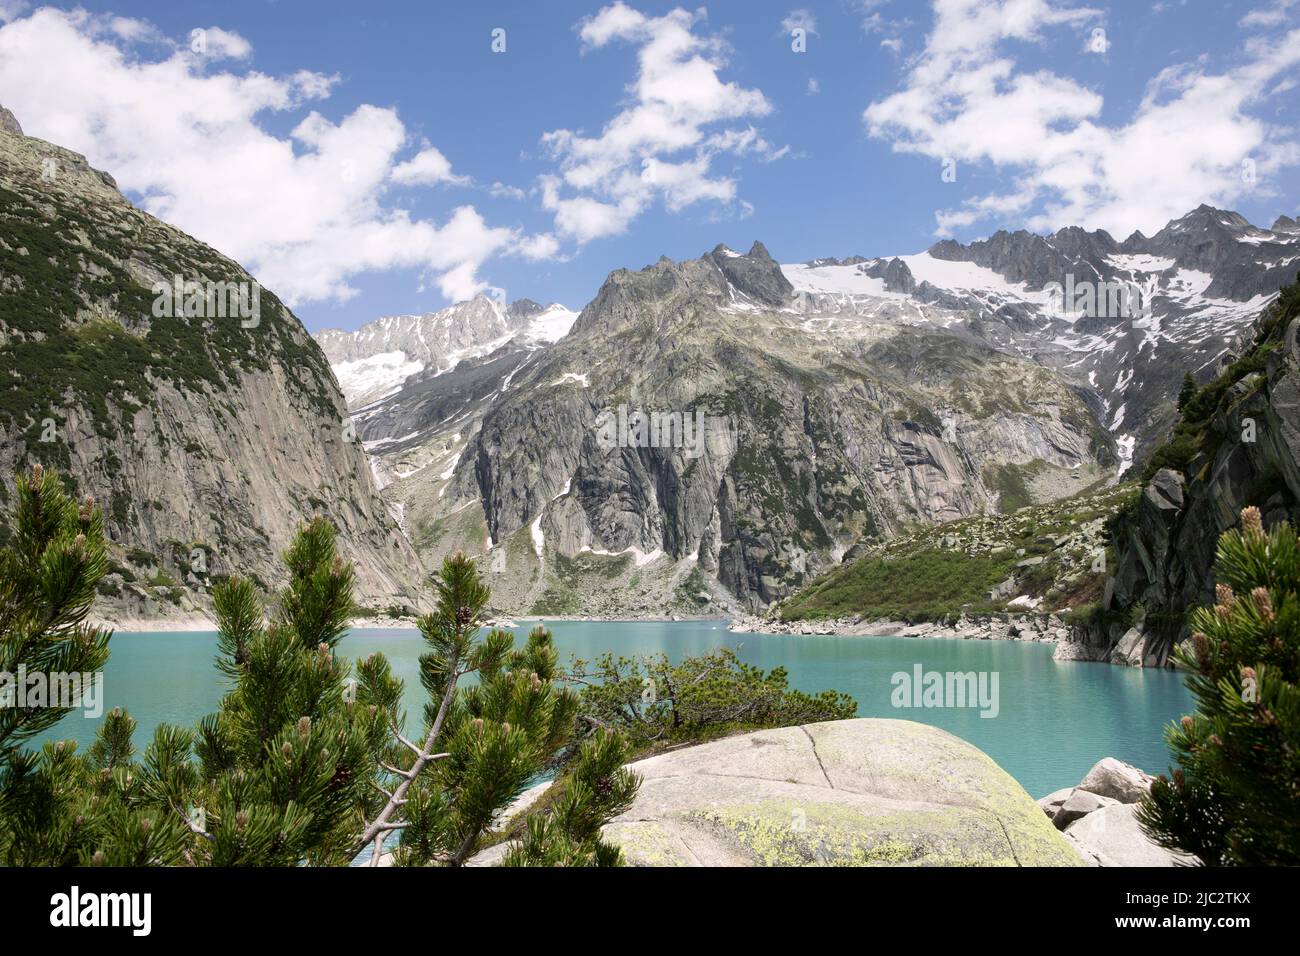 Gelmer Lake, Gelmersee d'estate. Bellissimo paesaggio in alta montagna con lago d'acqua turchese nelle alpi svizzere. Foto Stock